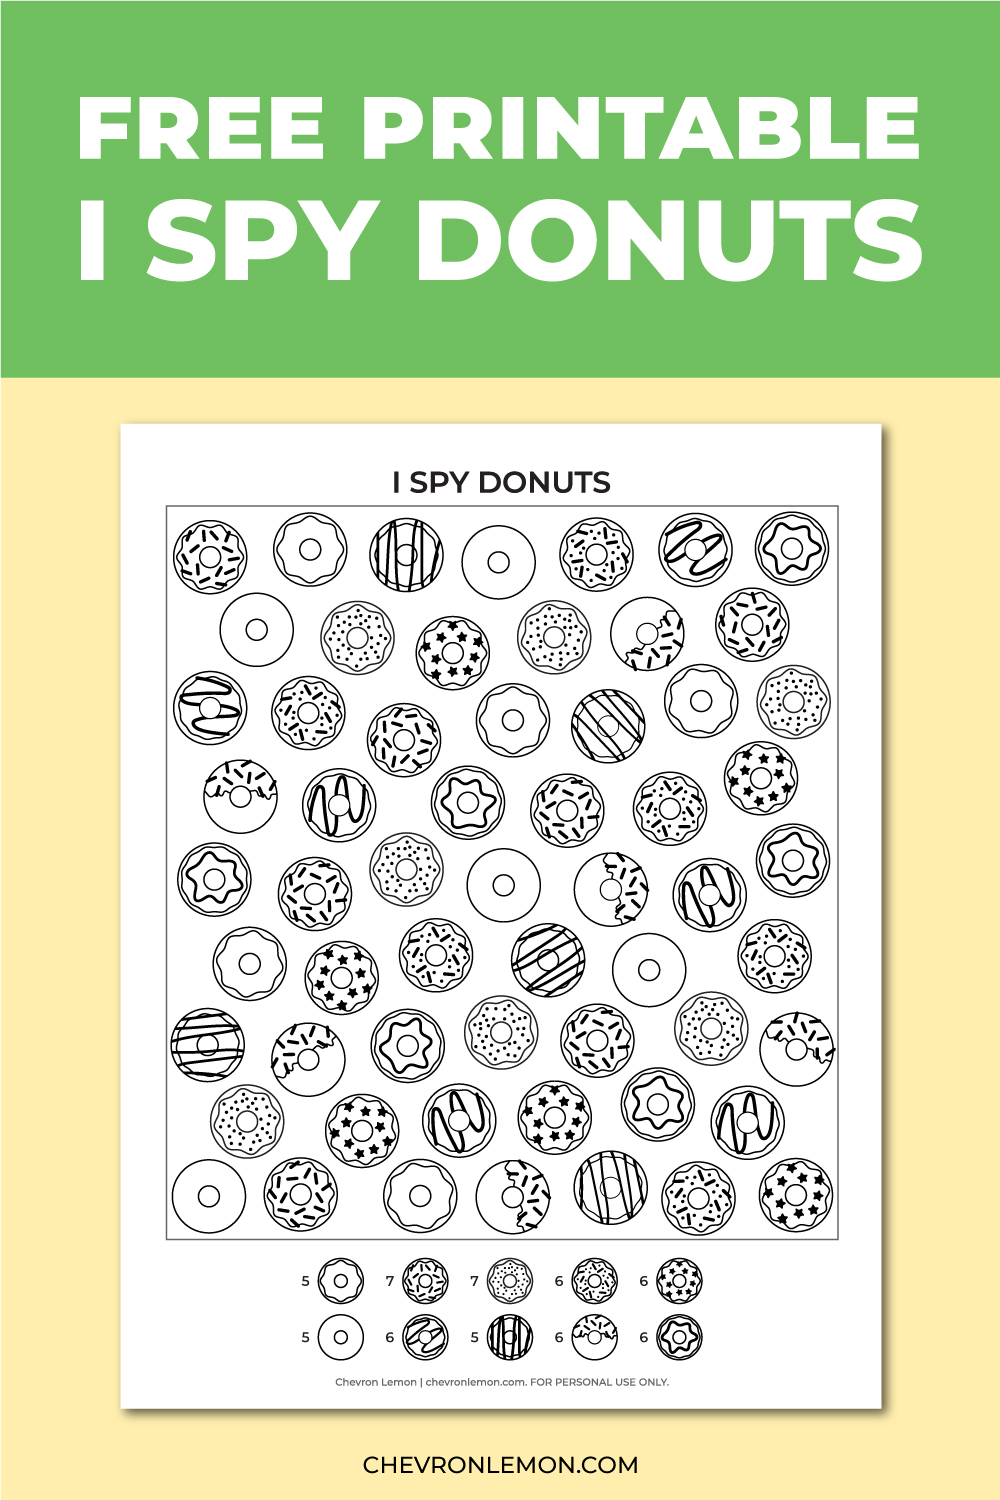 I spy donuts